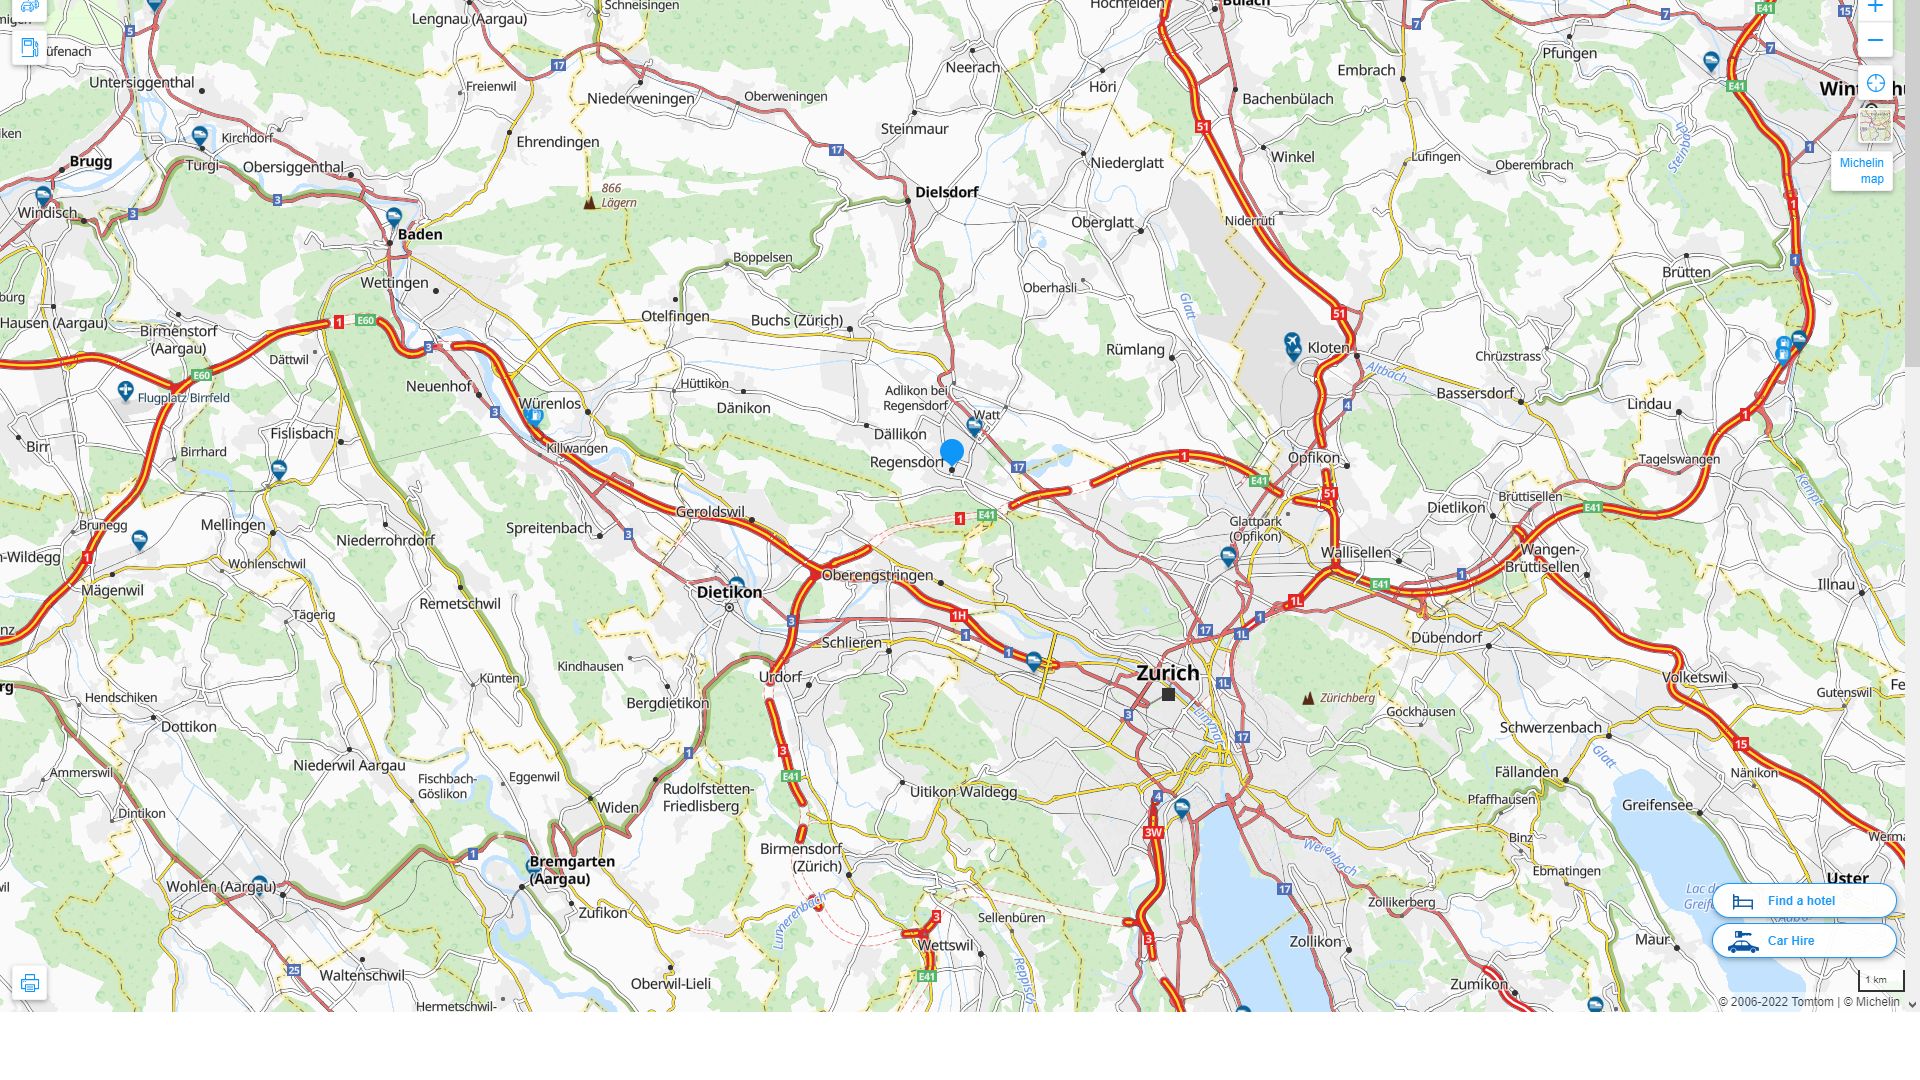 Regensdorf Highway and Road Map